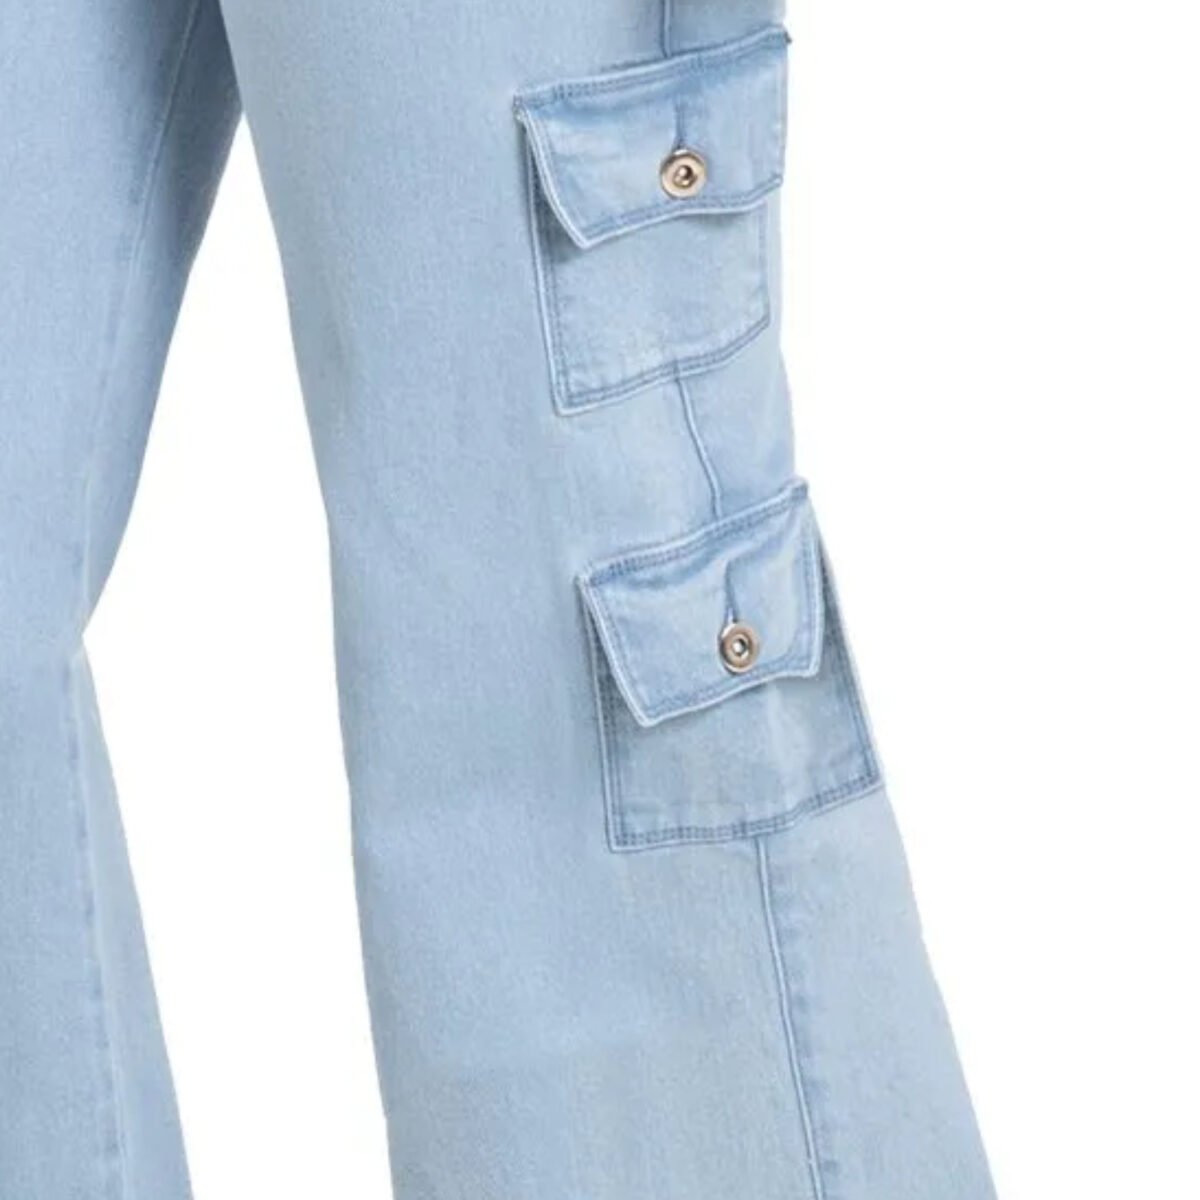 Los jeans colombianos cargo levanta gluteos incorporan la practicidad de los bolsillos cargo con la moda y el estilo contemporáneo.